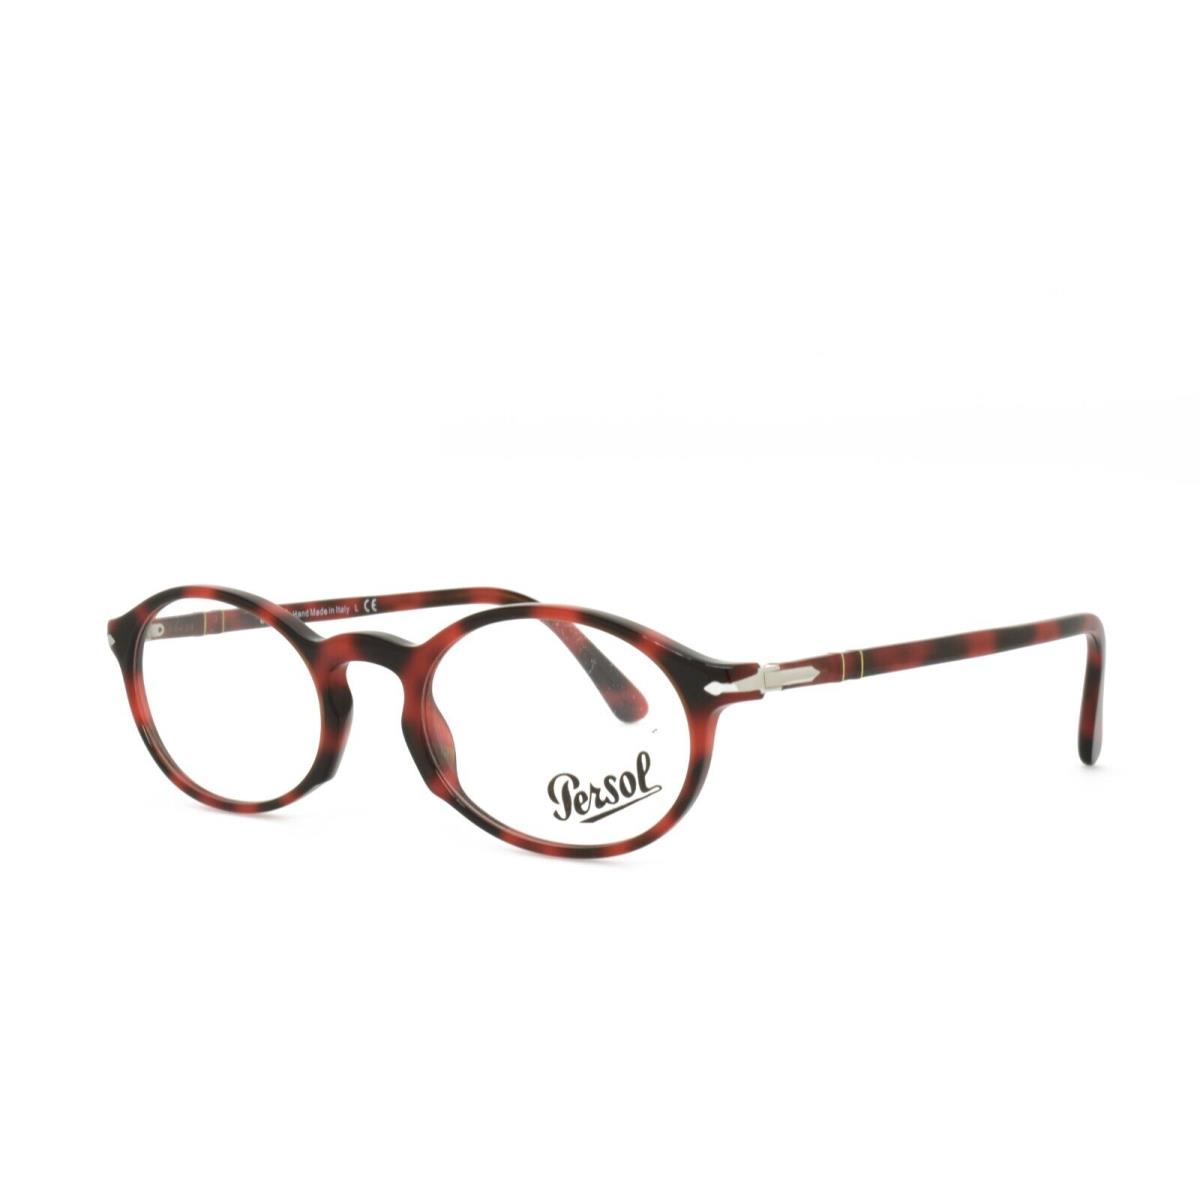 Persol 3219-V 1100 Eyeglasses 50-20-145 Red Tortoise - Frame: Red